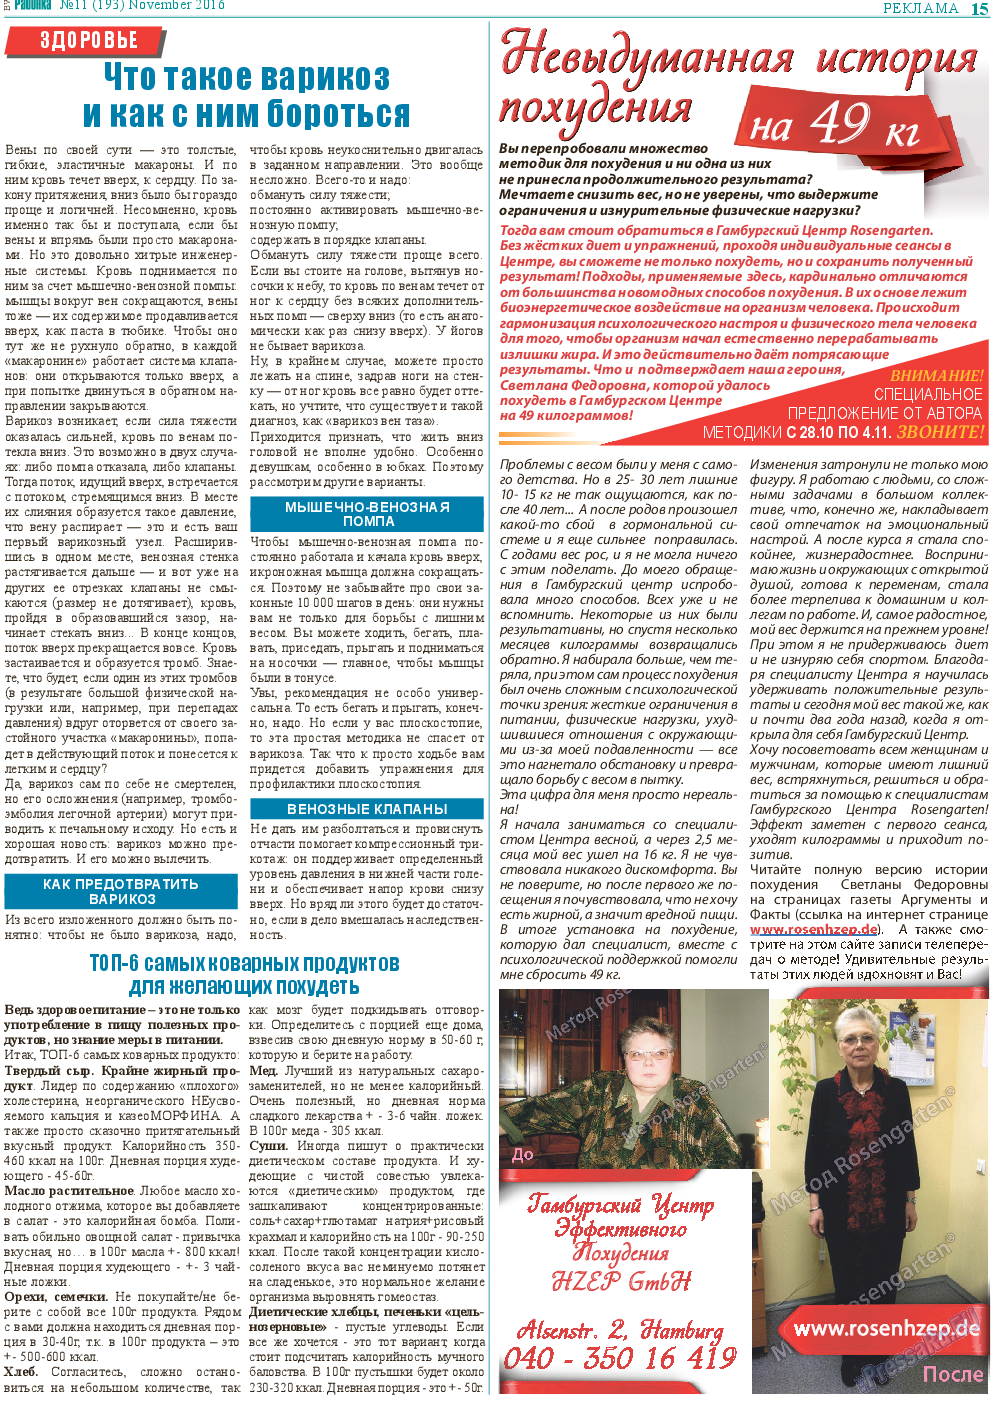 Районка-Süd-West, газета. 2016 №11 стр.15